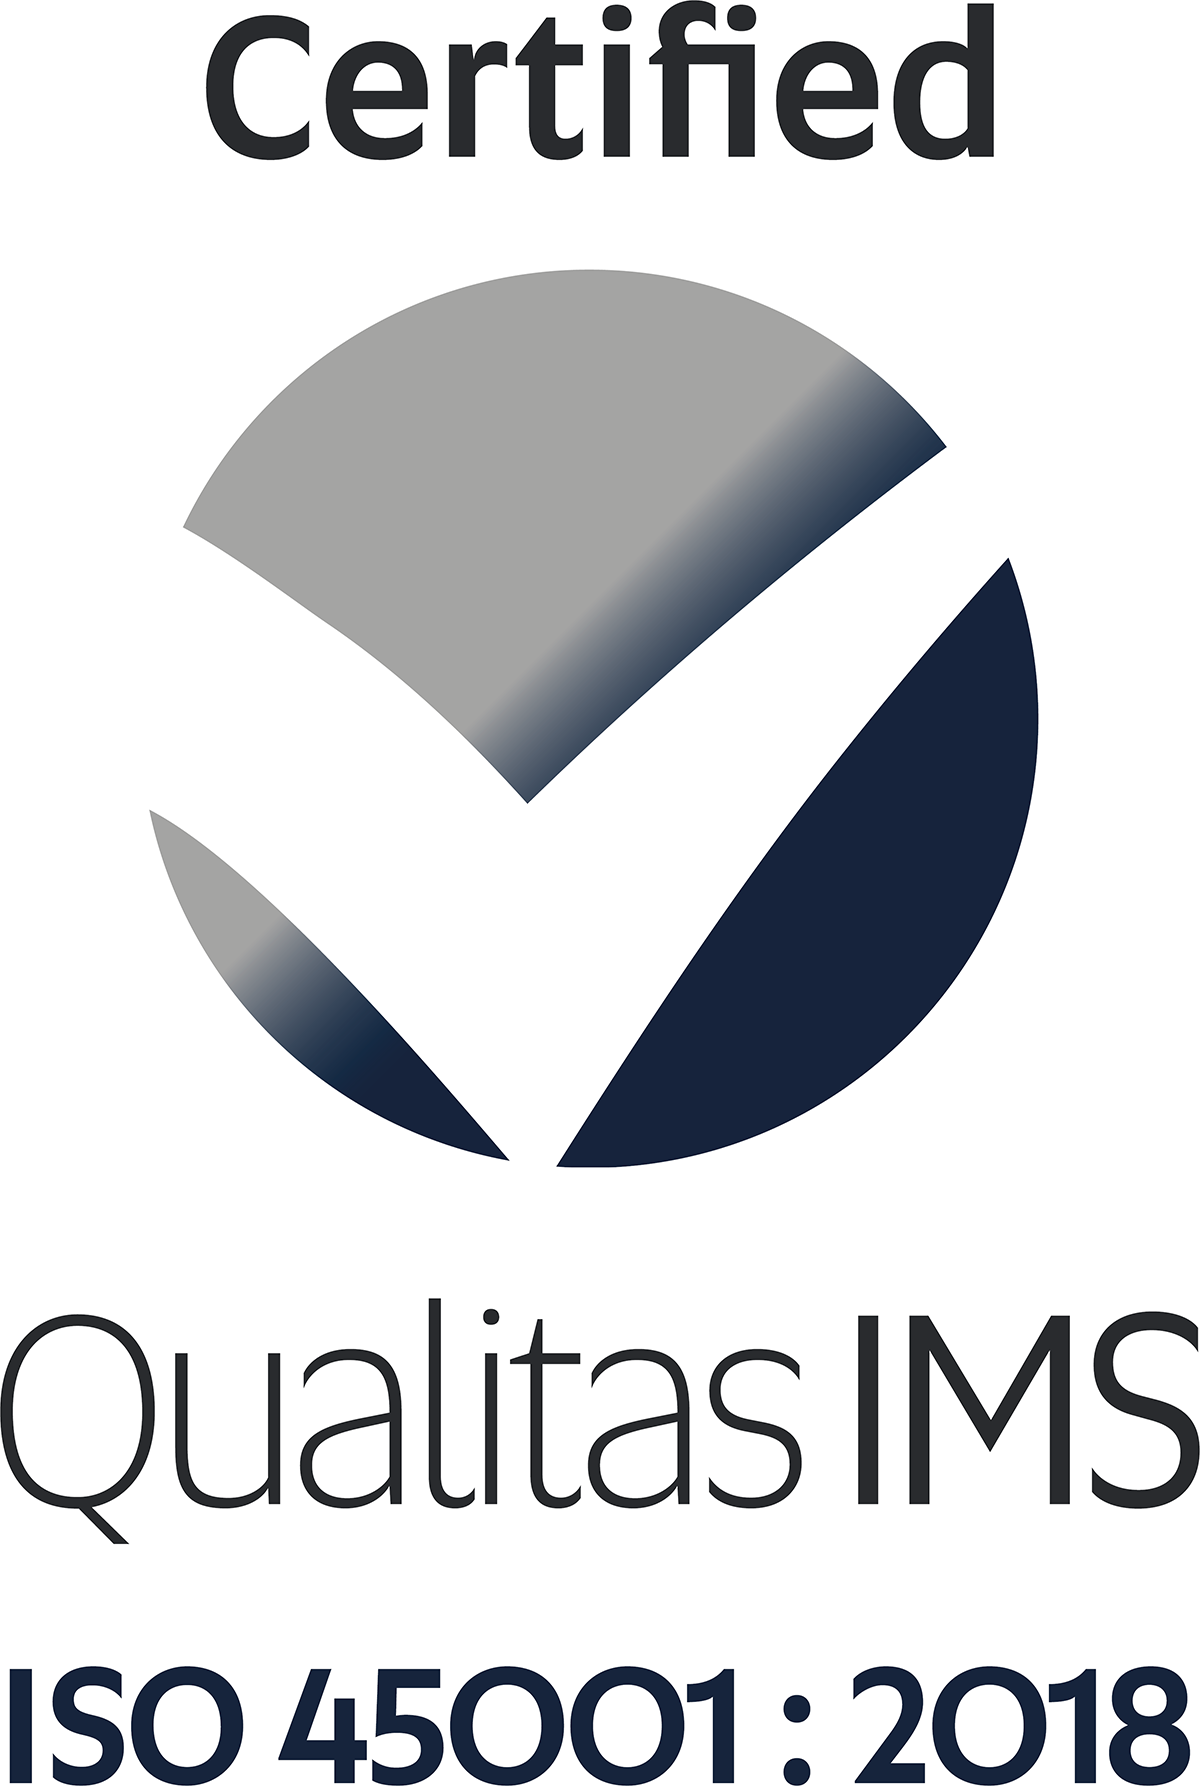 Qualitas IMS 45001 Certified (Full Colour) (1)